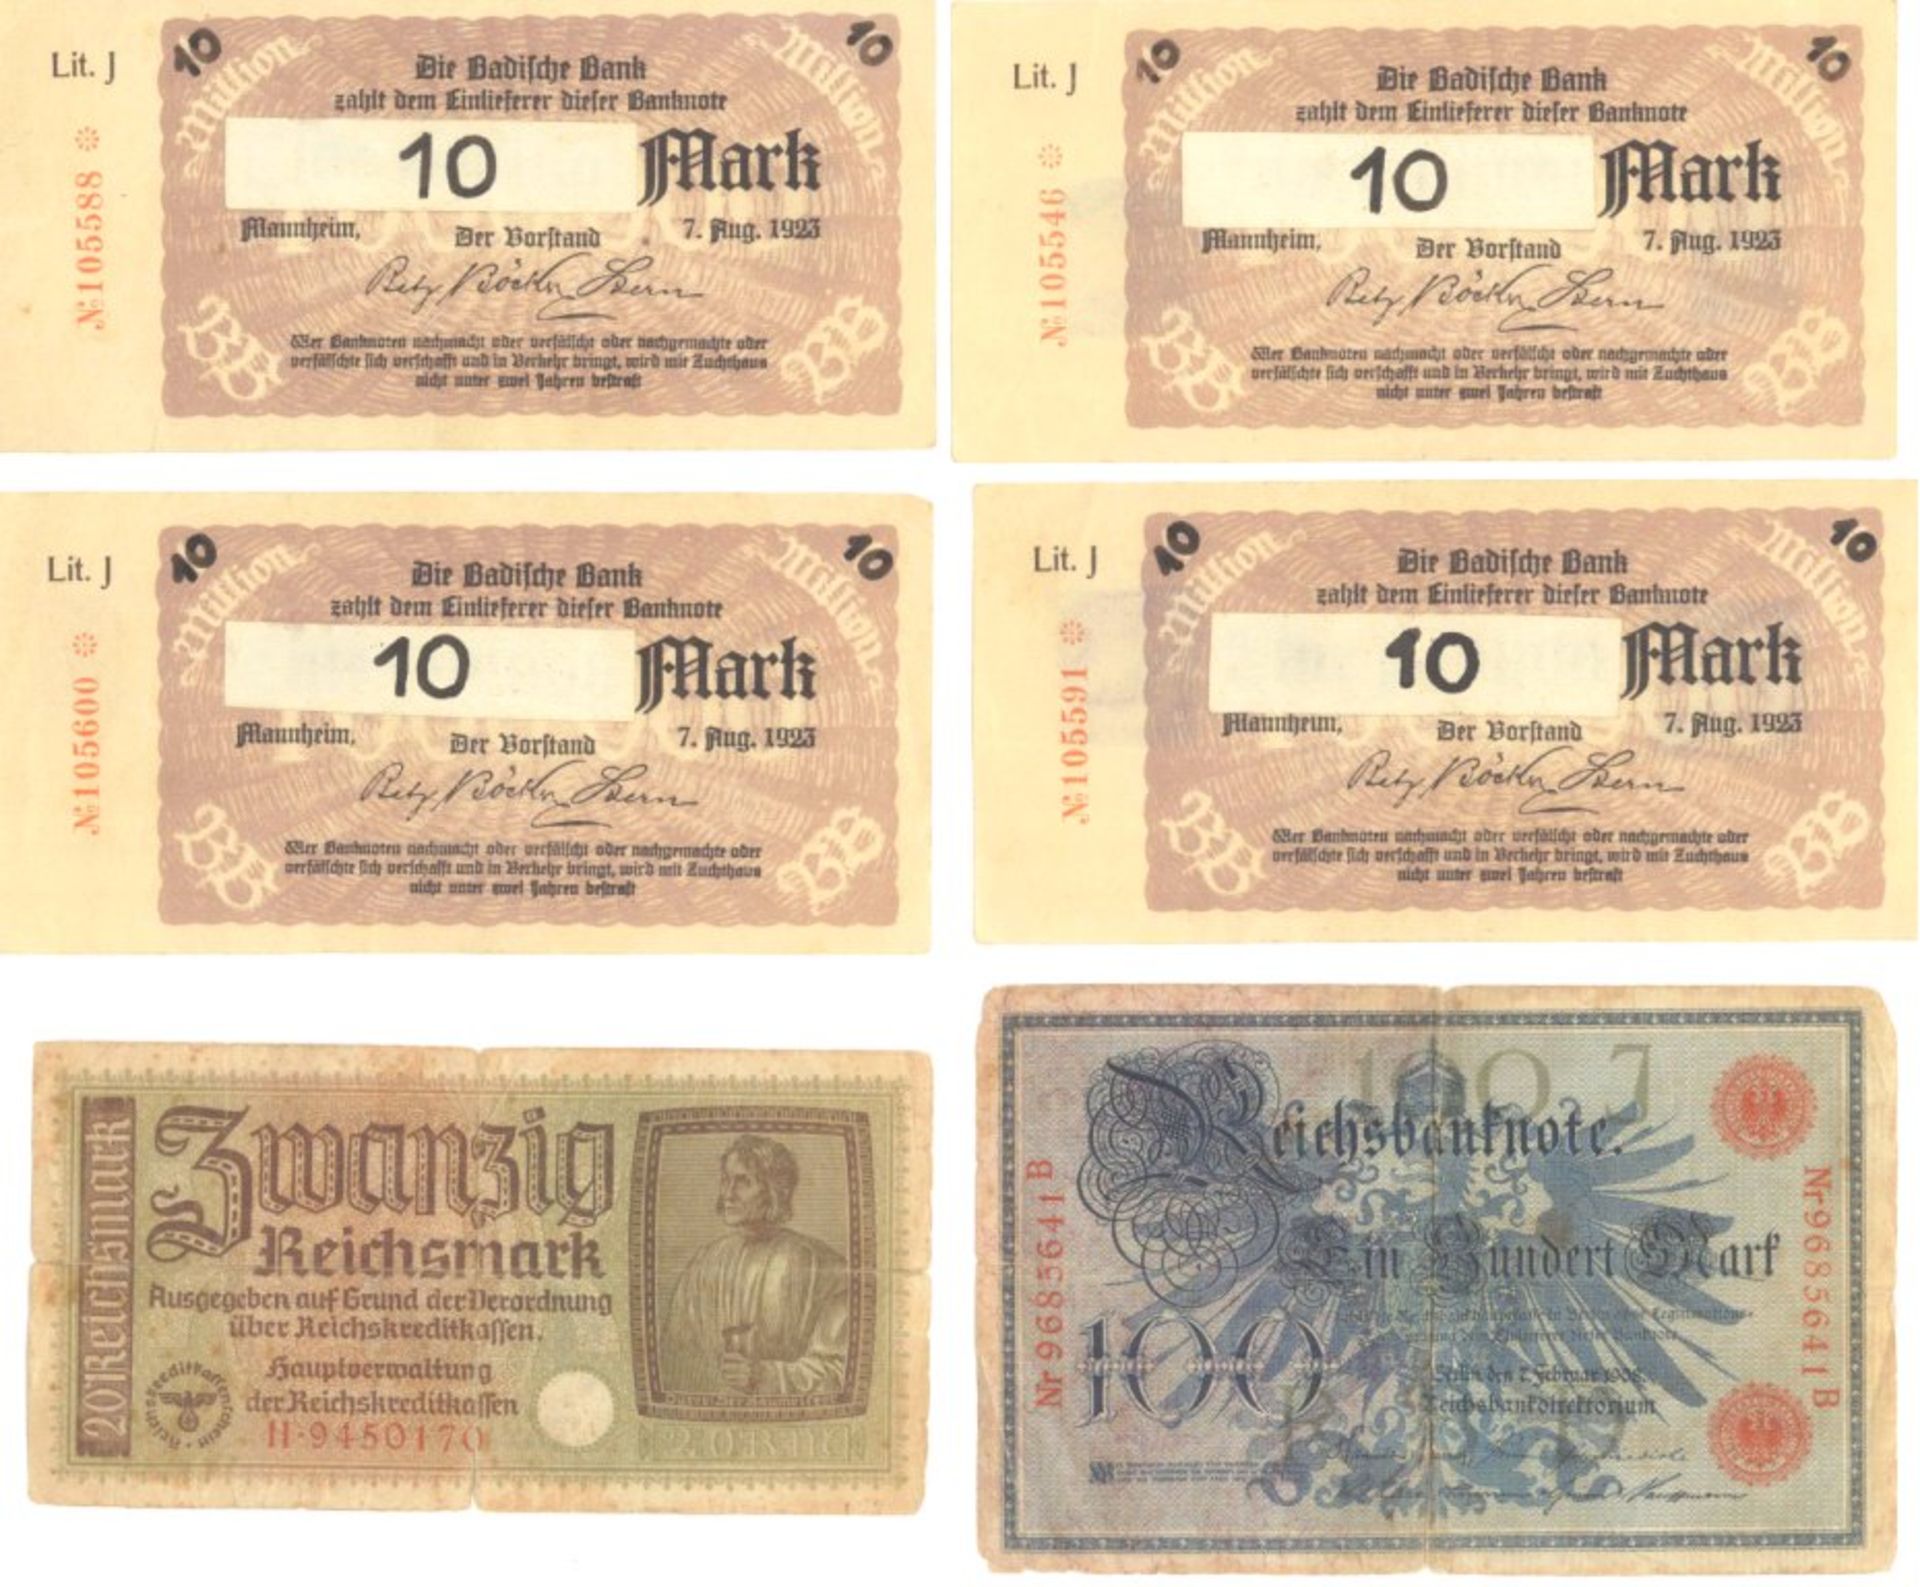 1923 Deutsches Reich INFLATION, BEHELFSBANKNOTENwohl amtliche oder halbamtliche Behelfsbanknoten